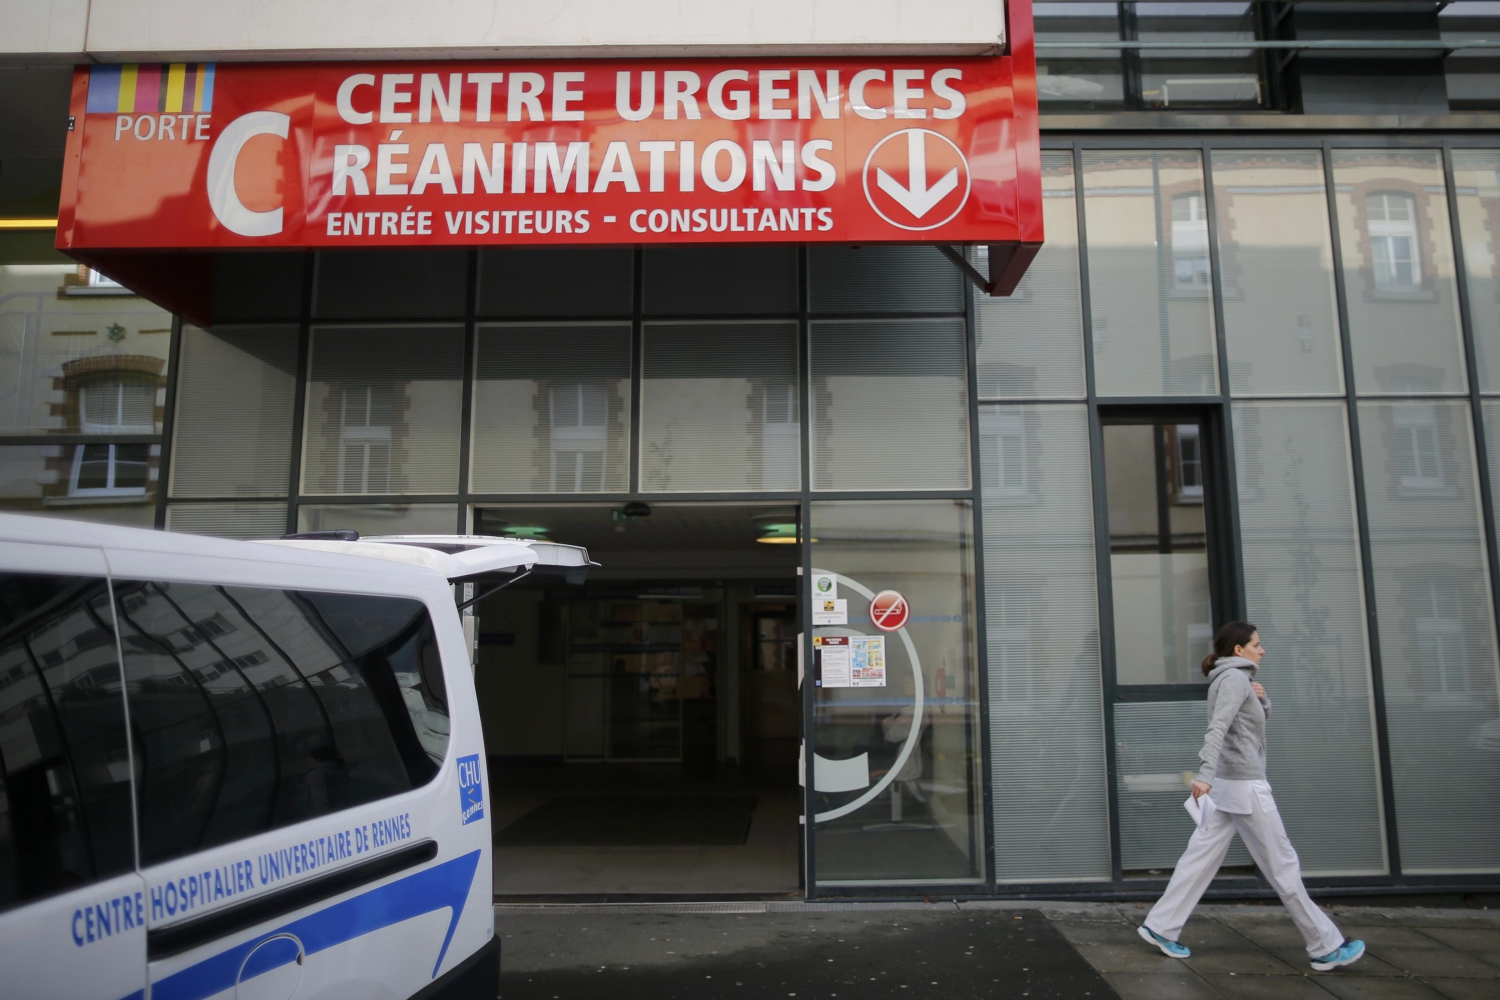 Seis personas graves tras participar en el ensayo de un nuevo fármaco en Francia